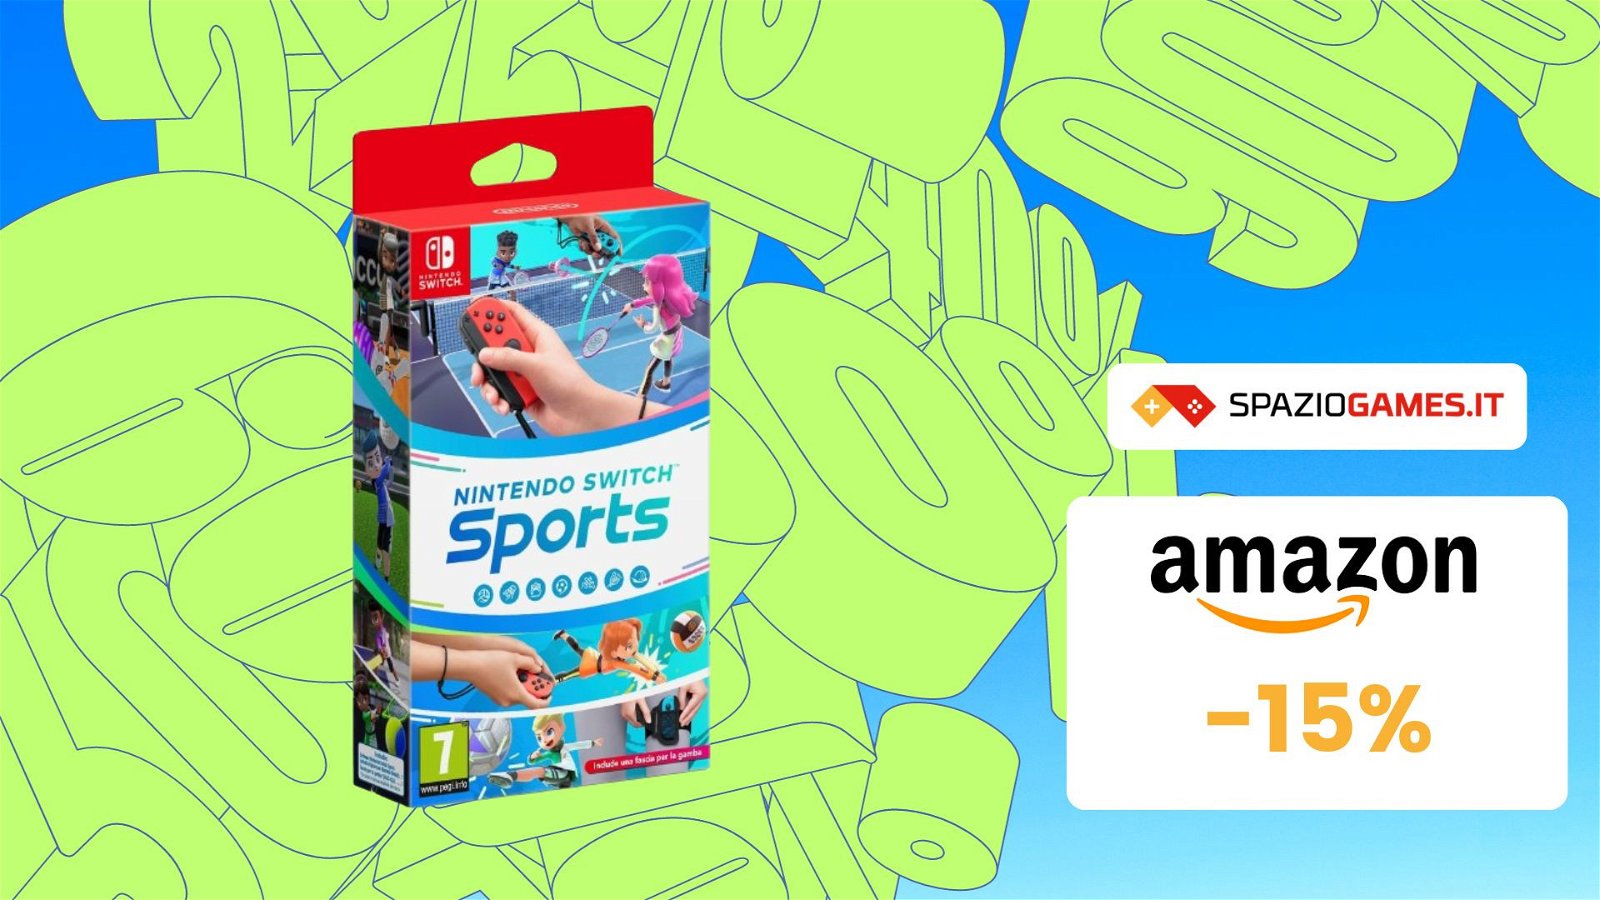 Nintendo Switch Sports: prezzo sempre PIÙ BASSO! Su Amazon a soli 39€!